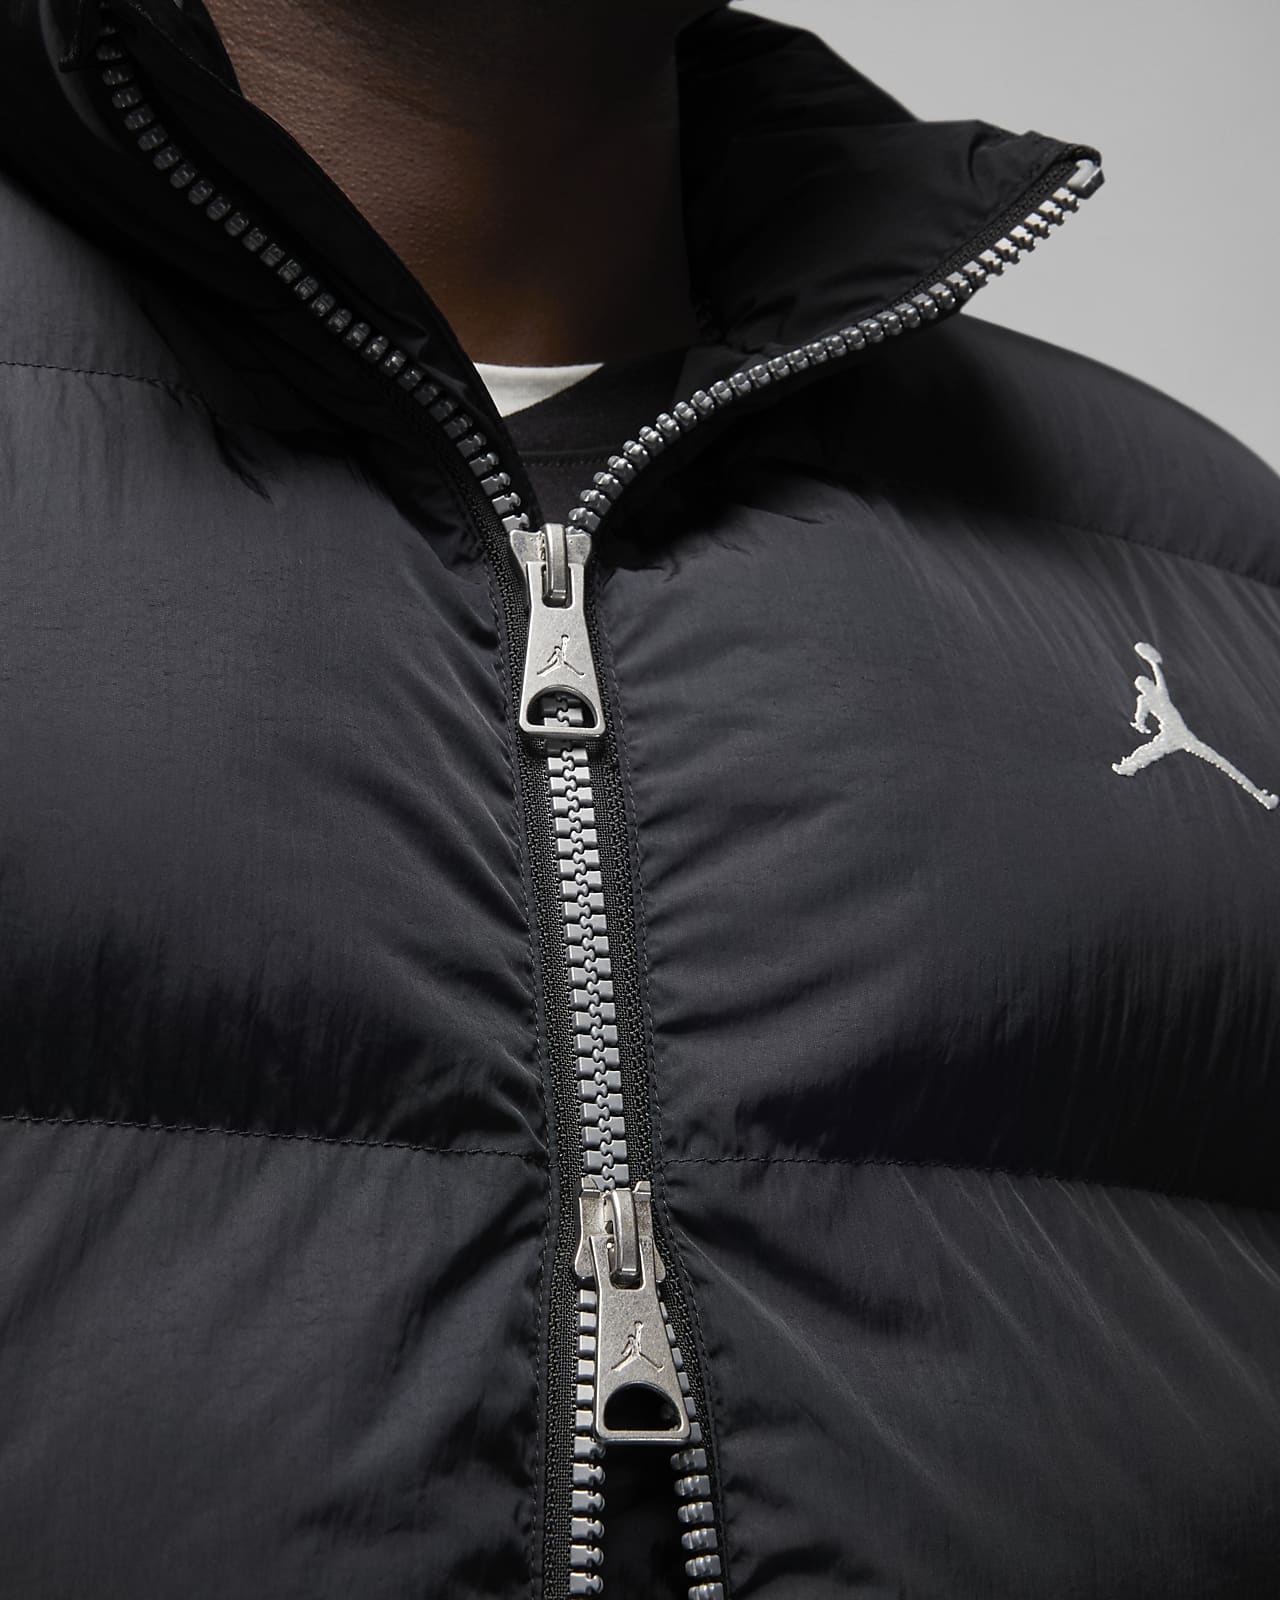 Jordan Essentials Men's Poly Puffer Jacket. Nike IL